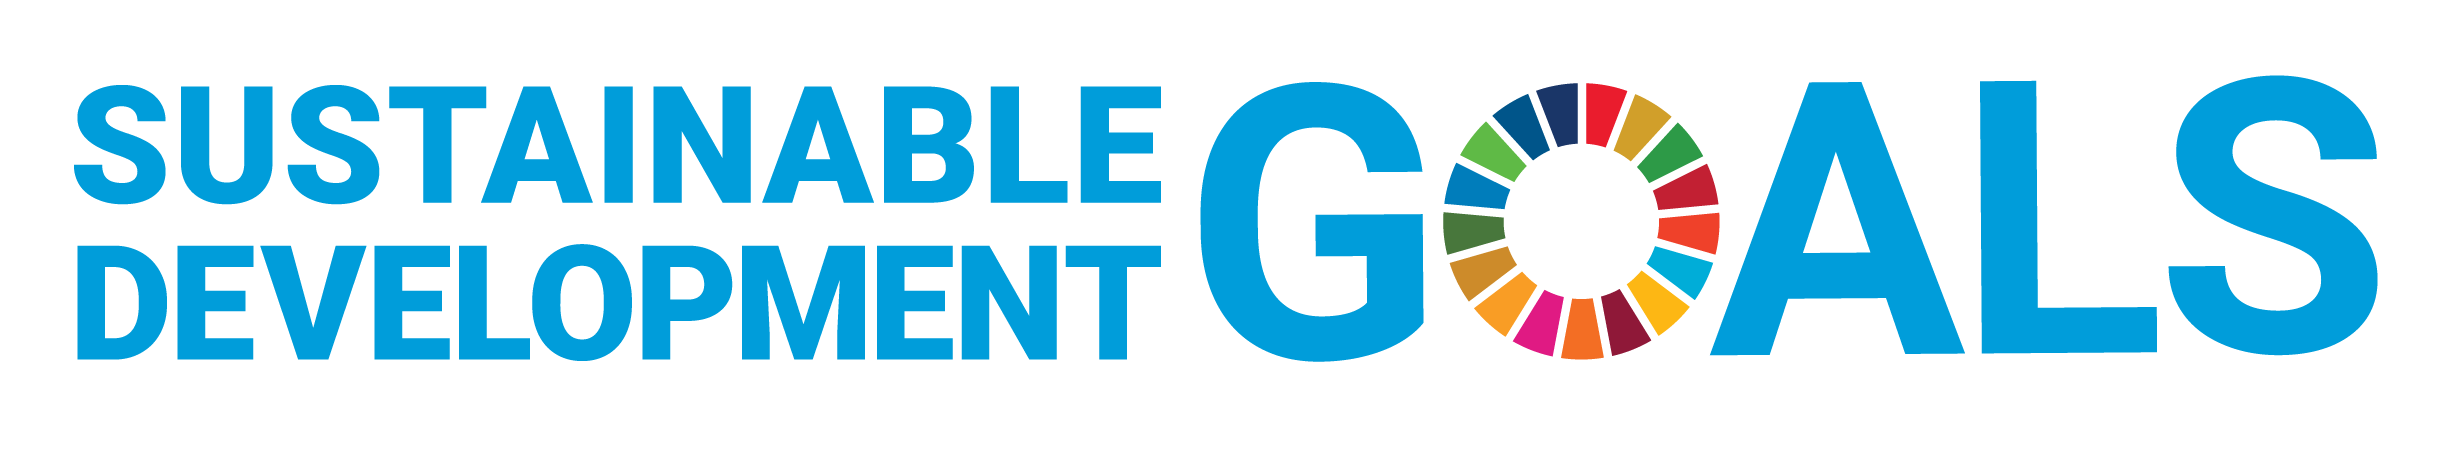 United Nations Sustainable development Goals logo horizontal